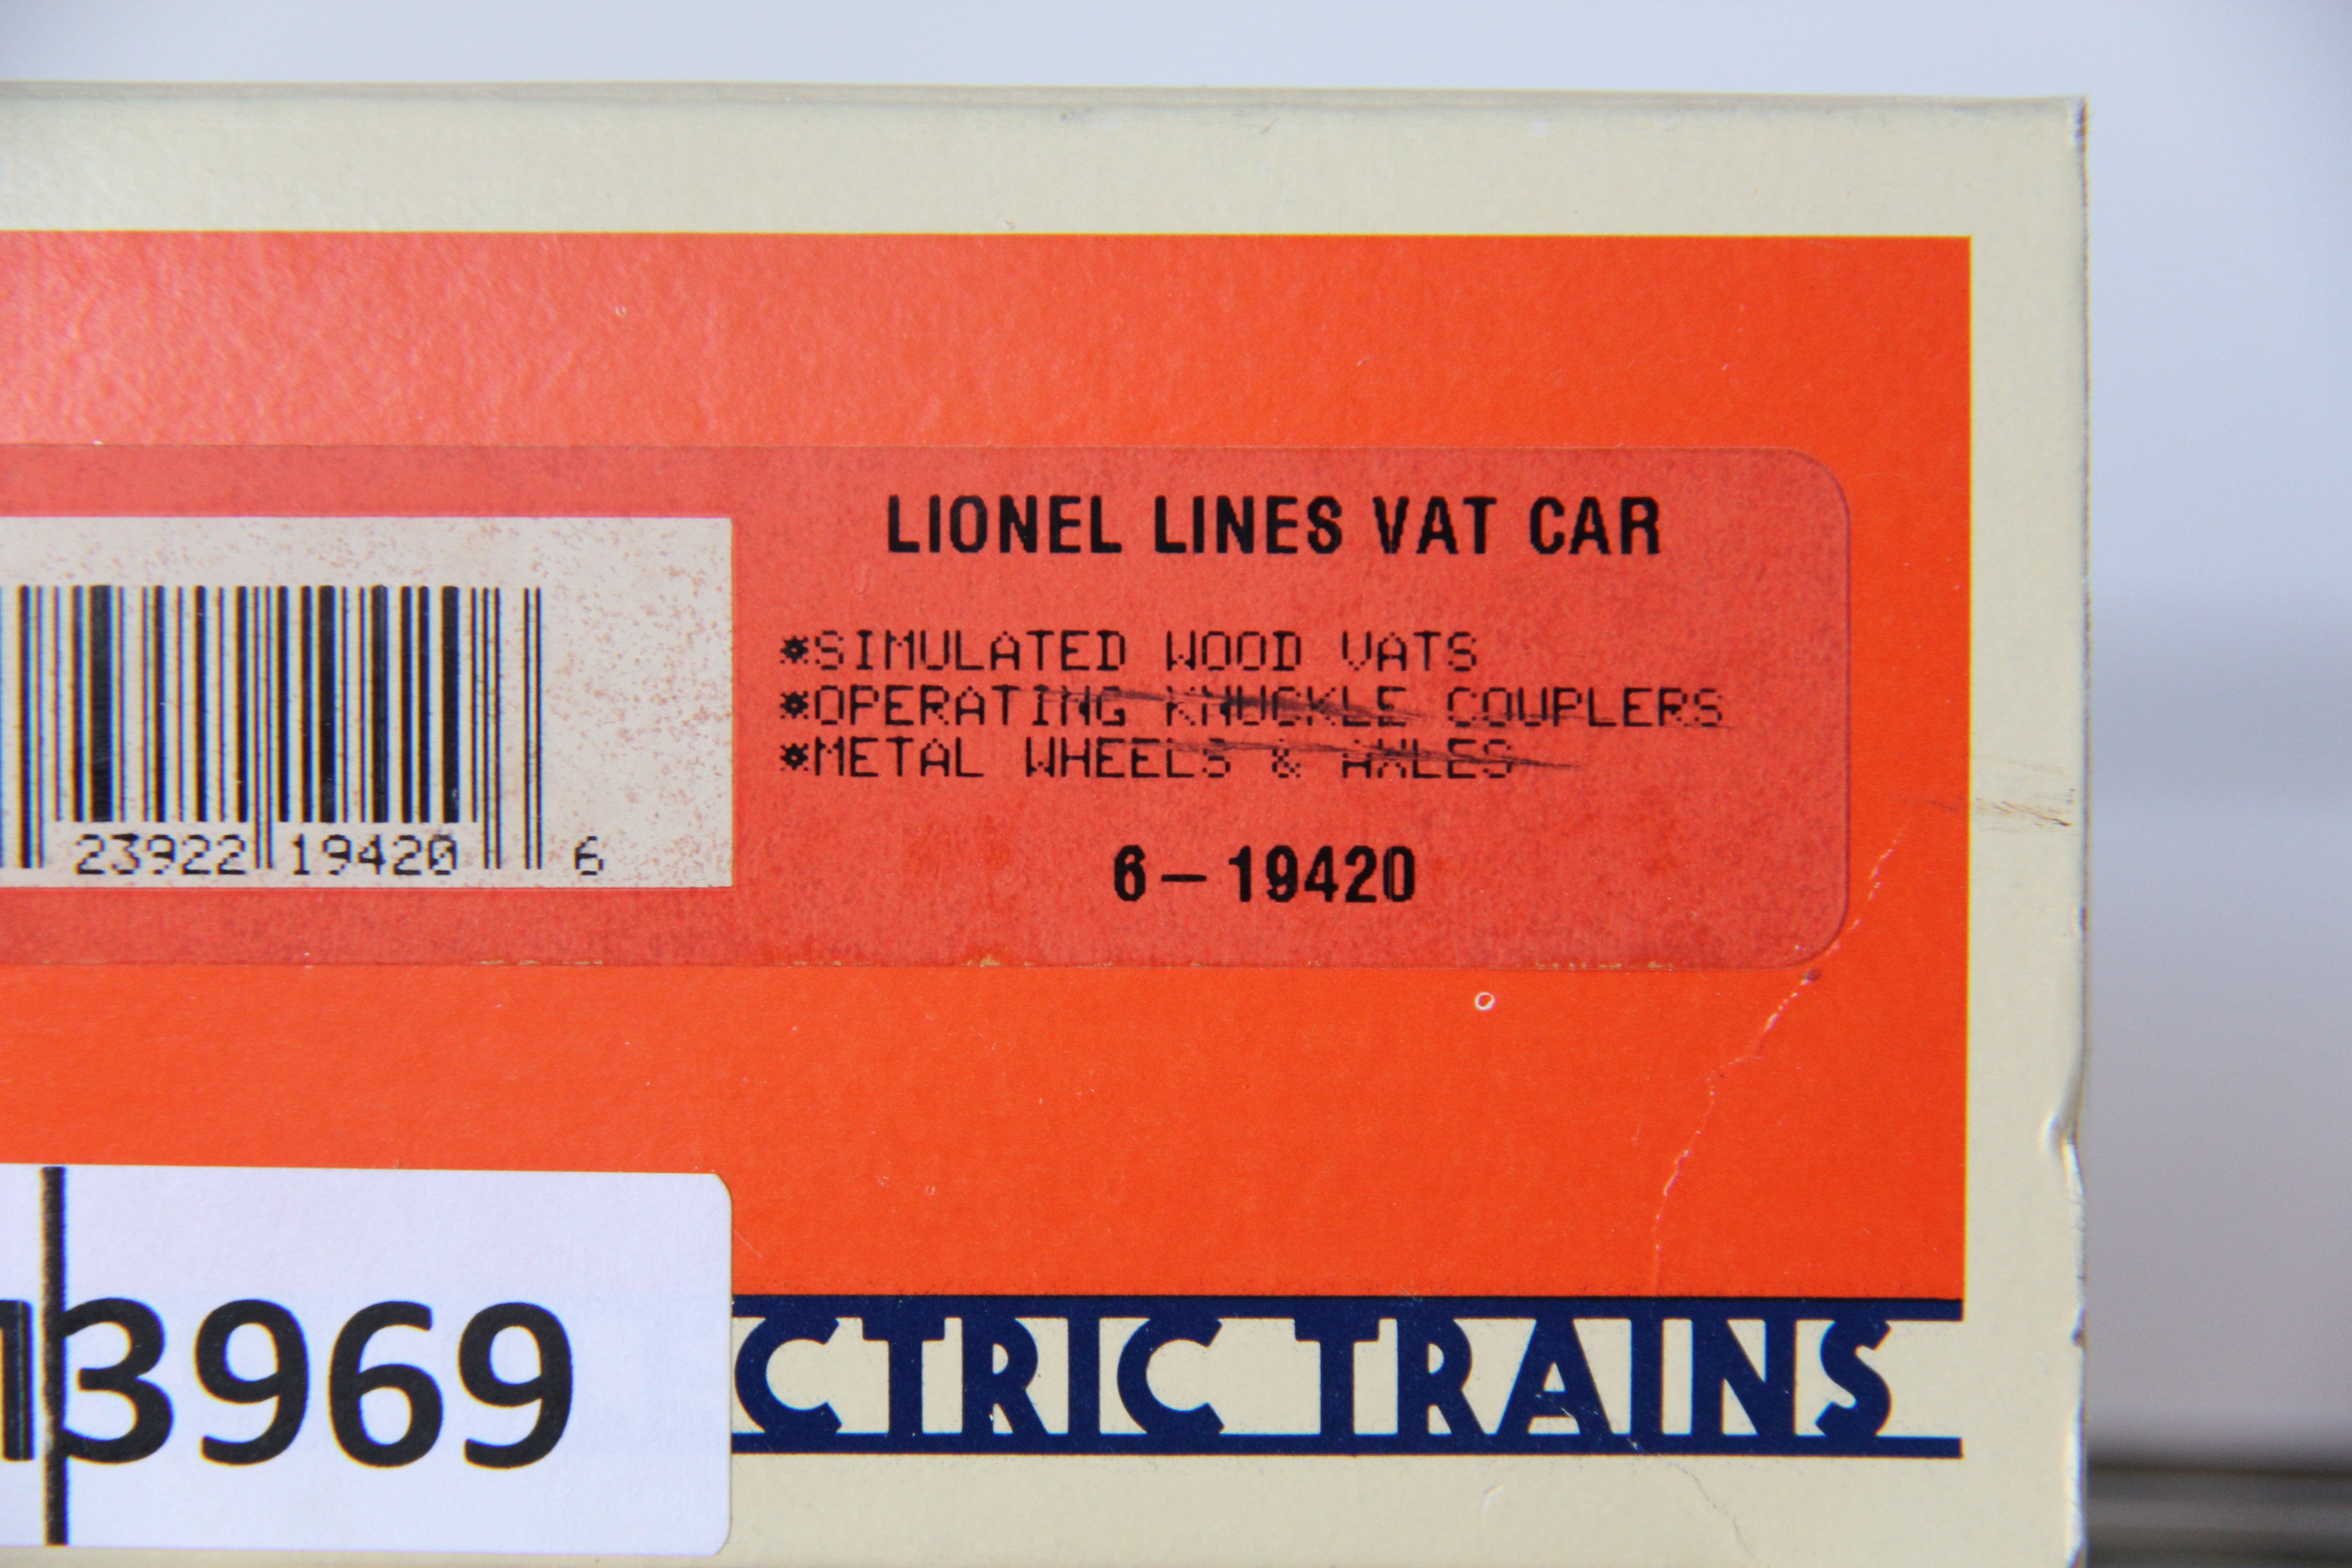 Lionel Lines 6-19420 Vat Car-Second hand-M3969